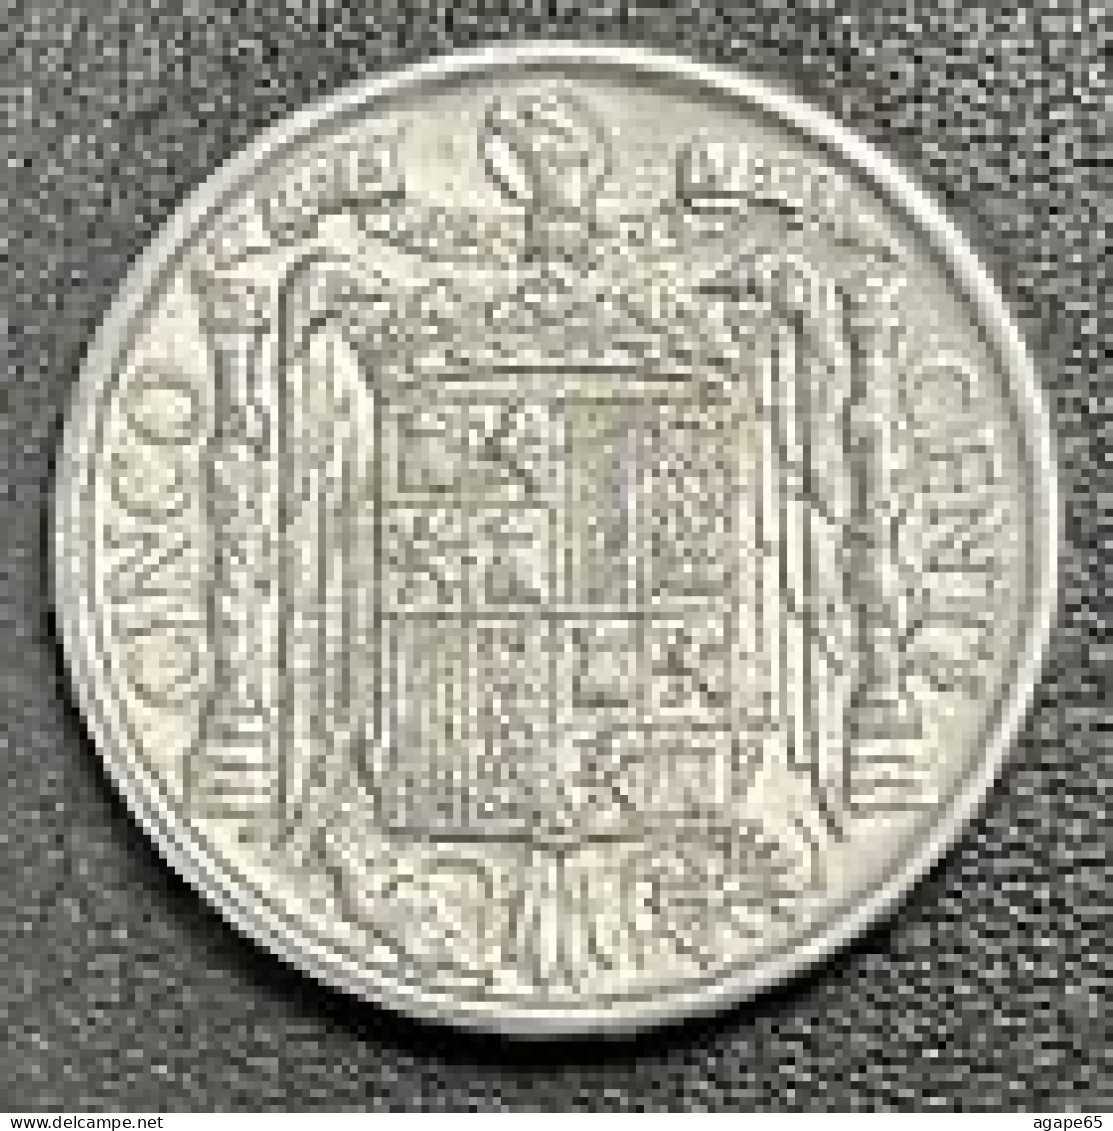 5 Centimos, Spain, 1945 - 5 Céntimos